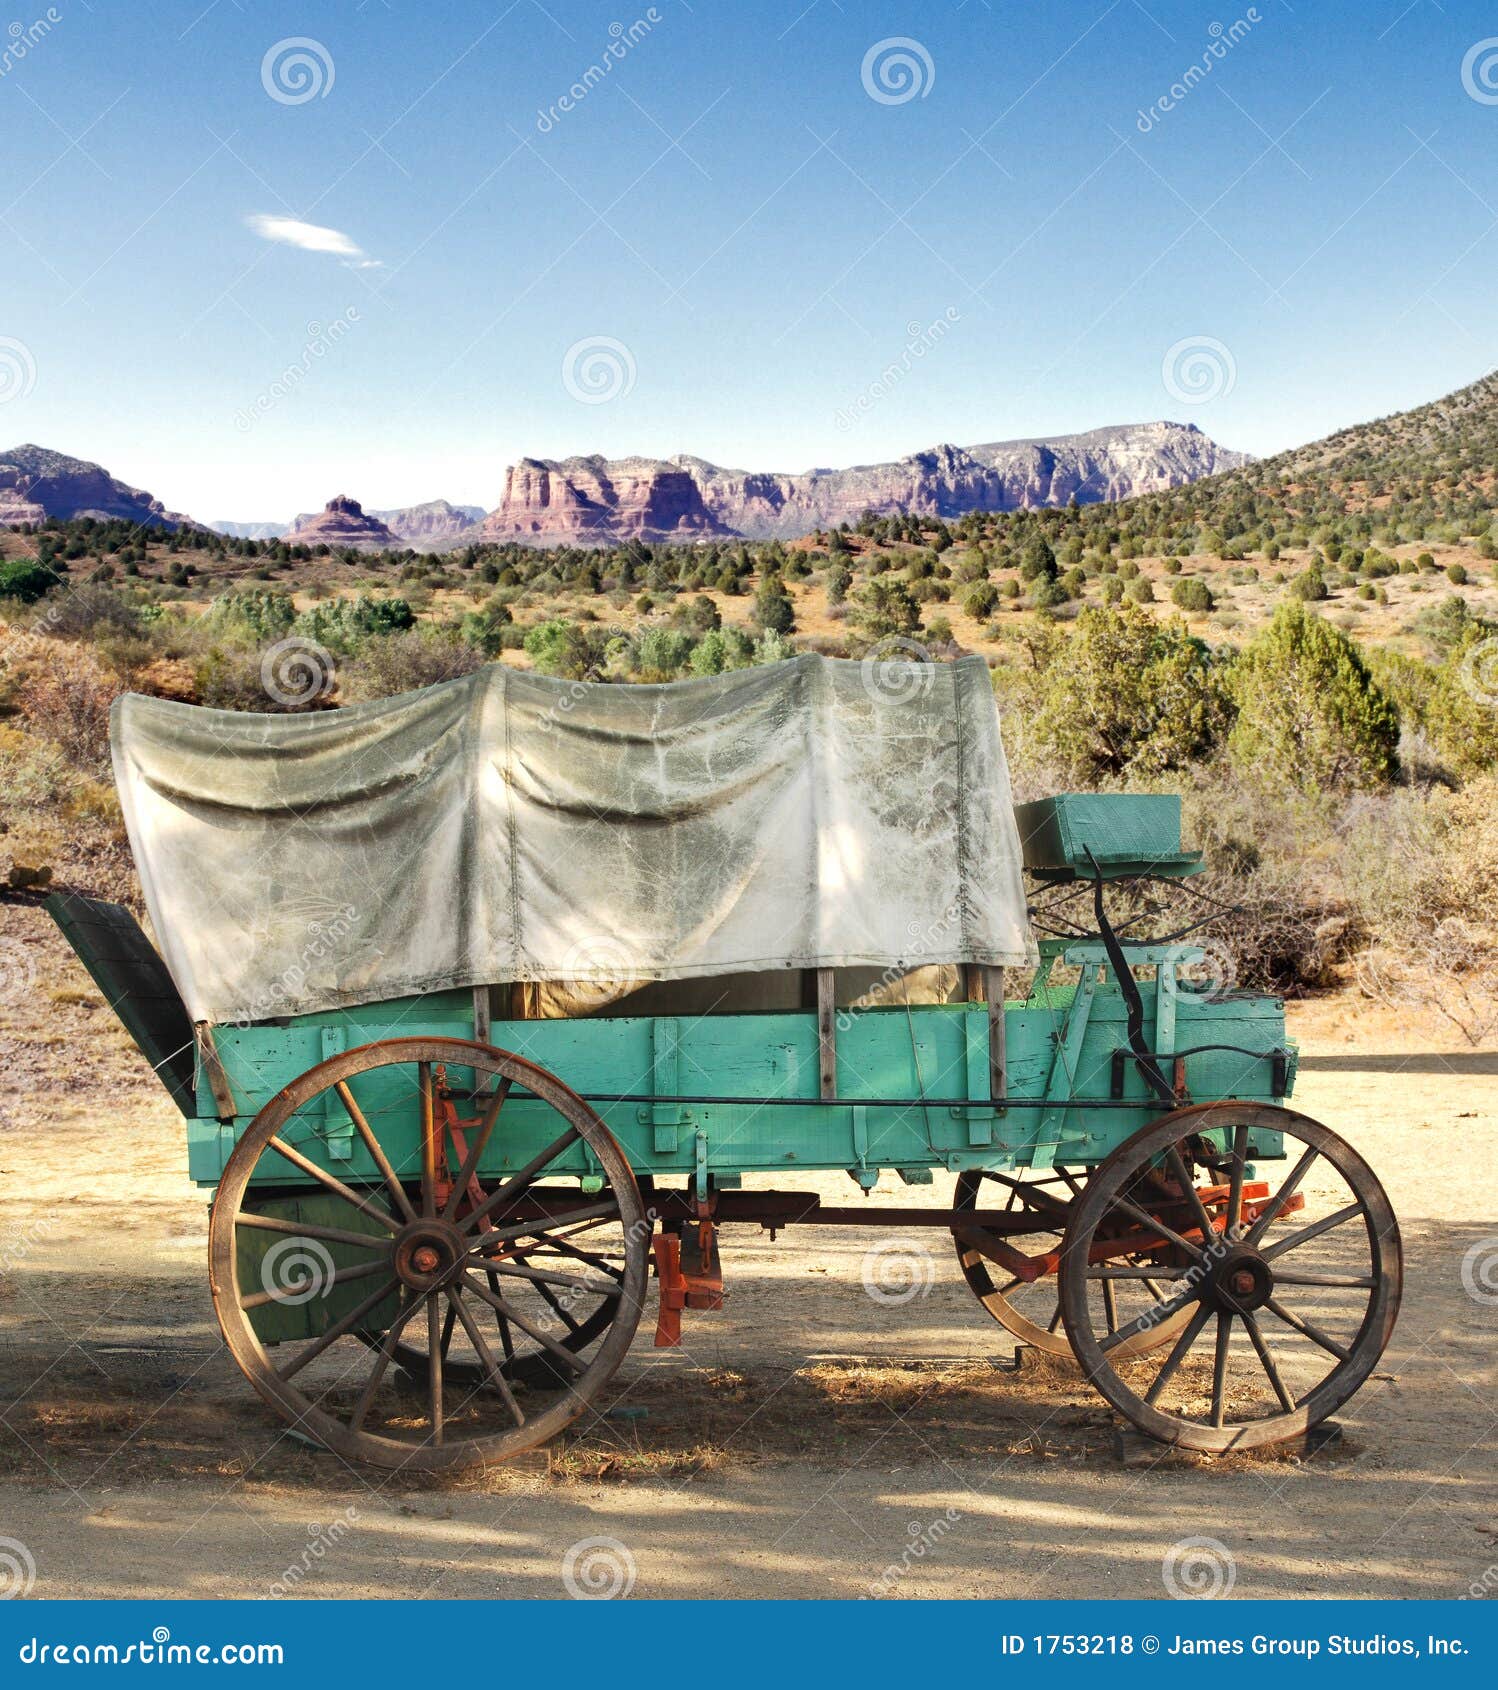 conestoga wagon